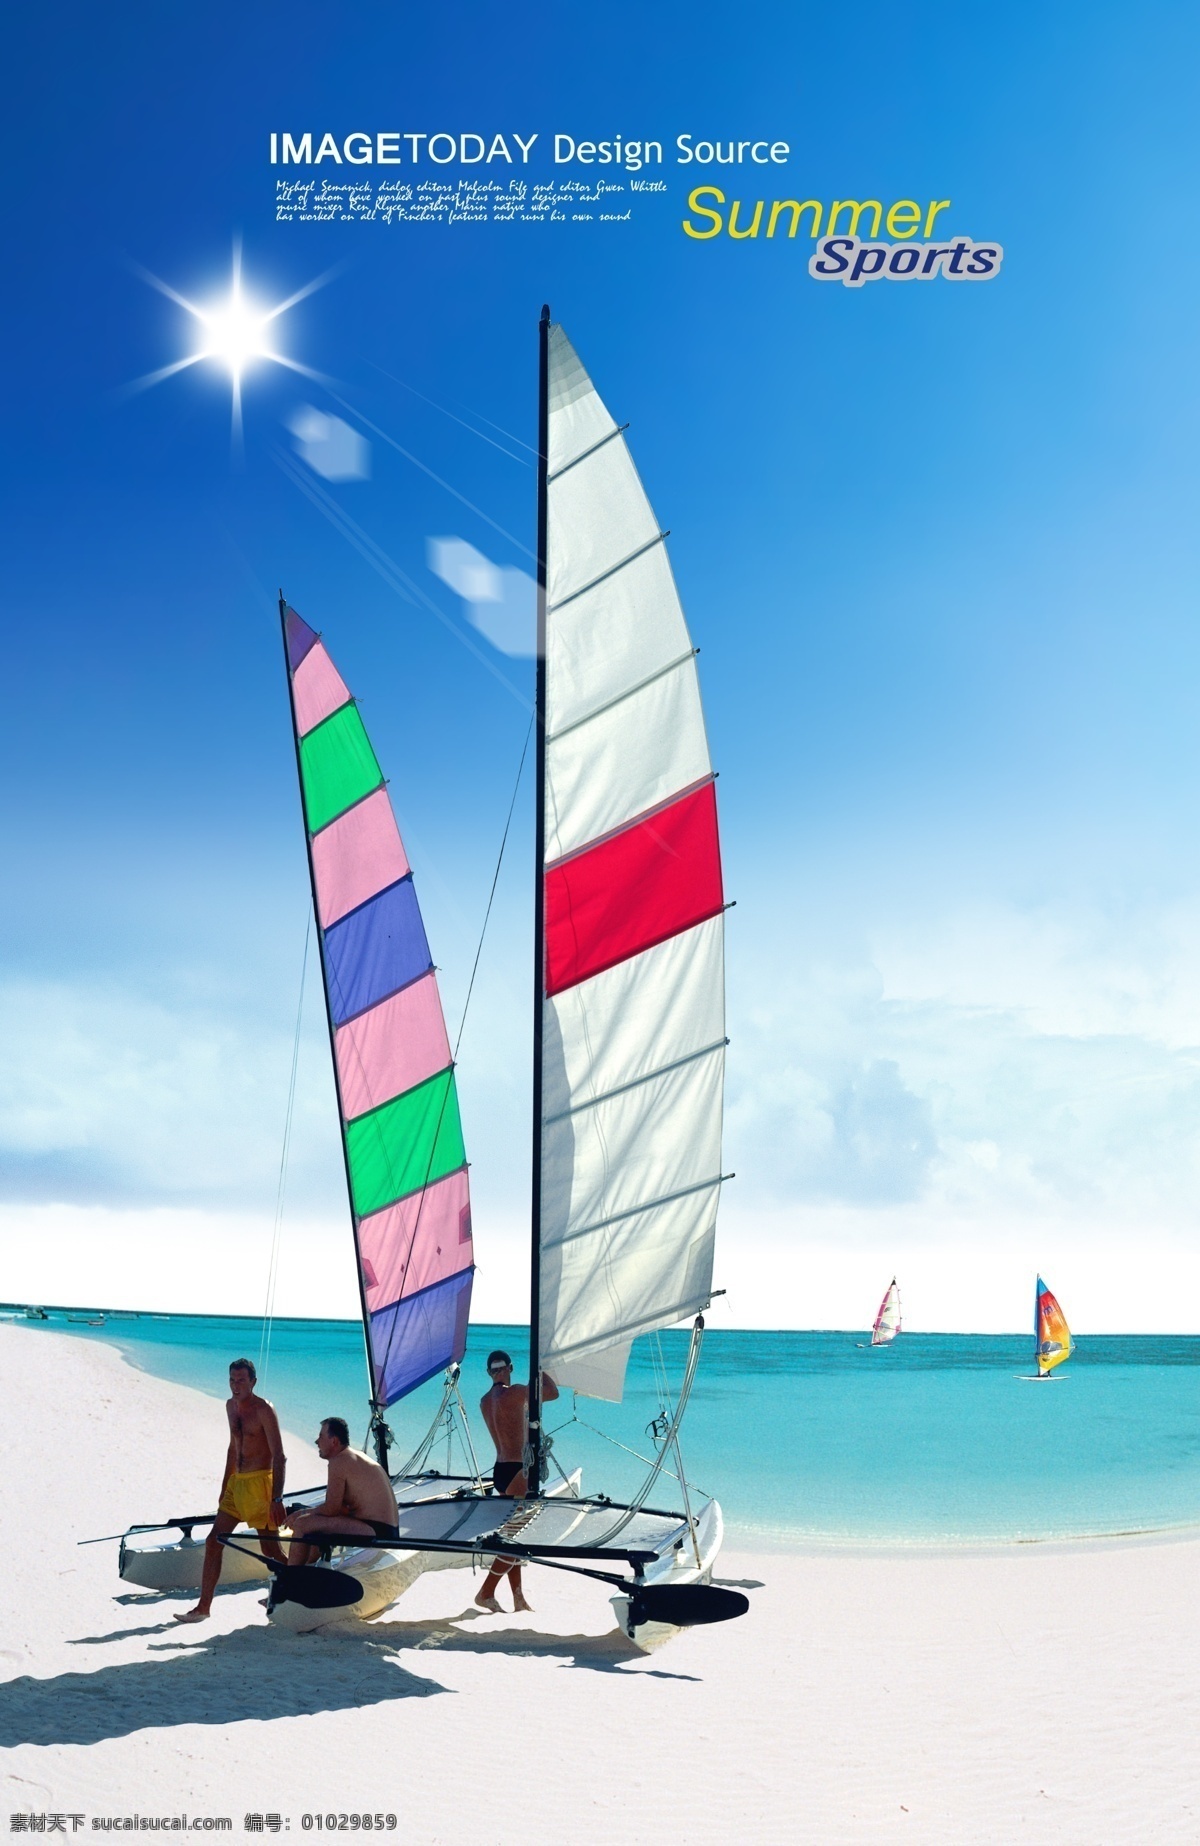 分层 帆船 风景 海水 人物 沙滩 太阳 天空 夏天 海报 模板下载 夏天海报 源文件库 促销海报